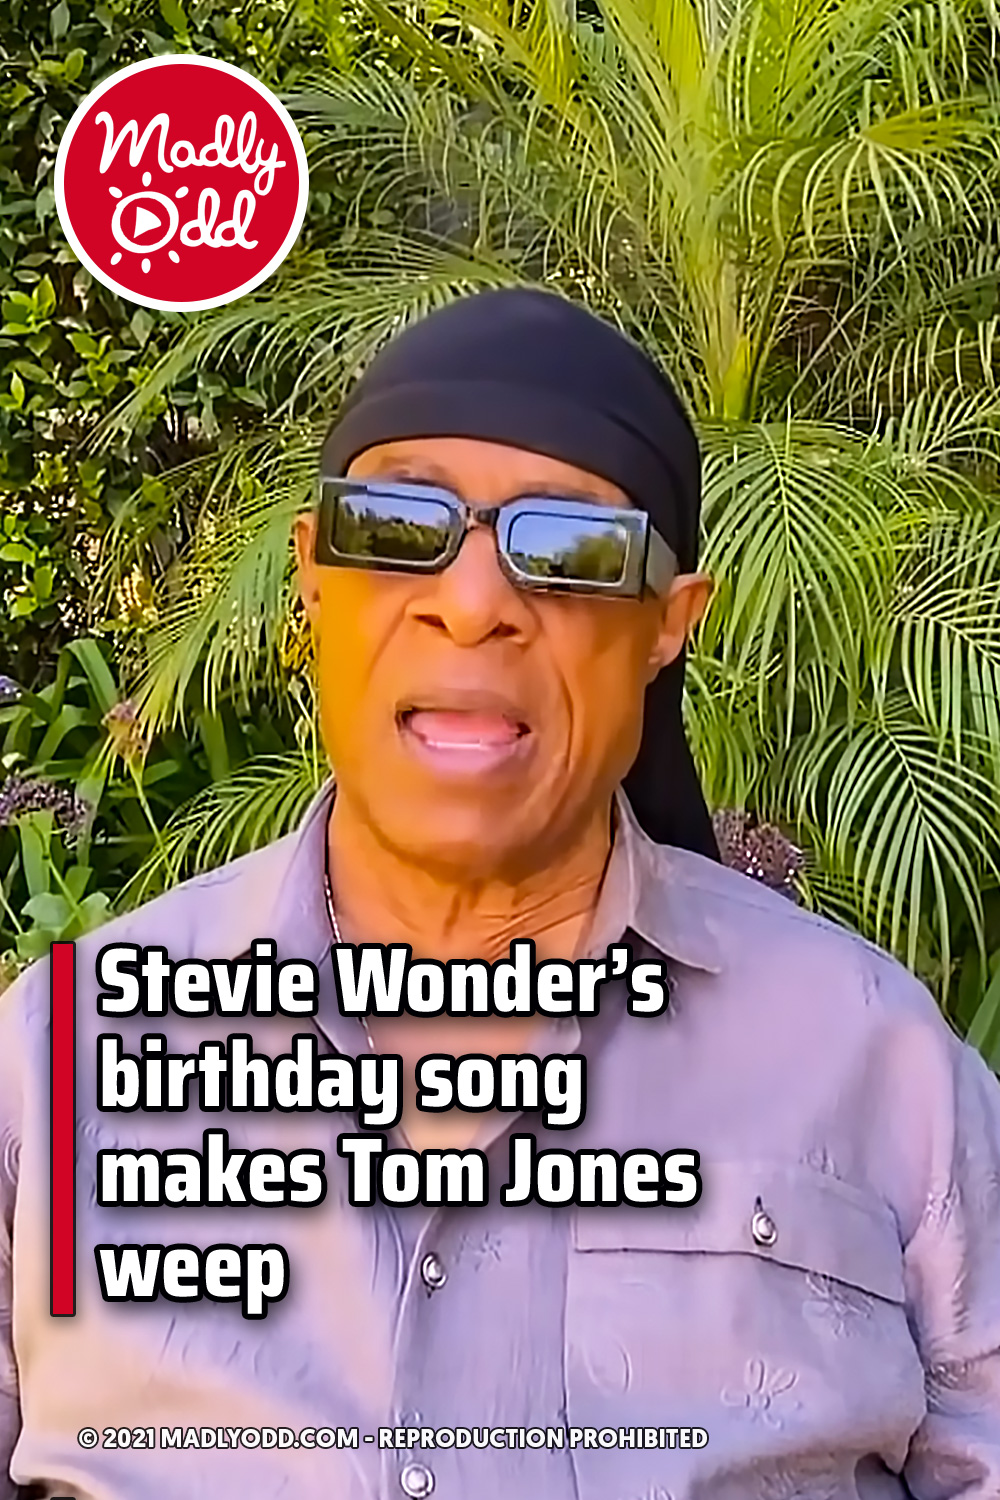 Stevie Wonder’s birthday song makes Tom Jones weep